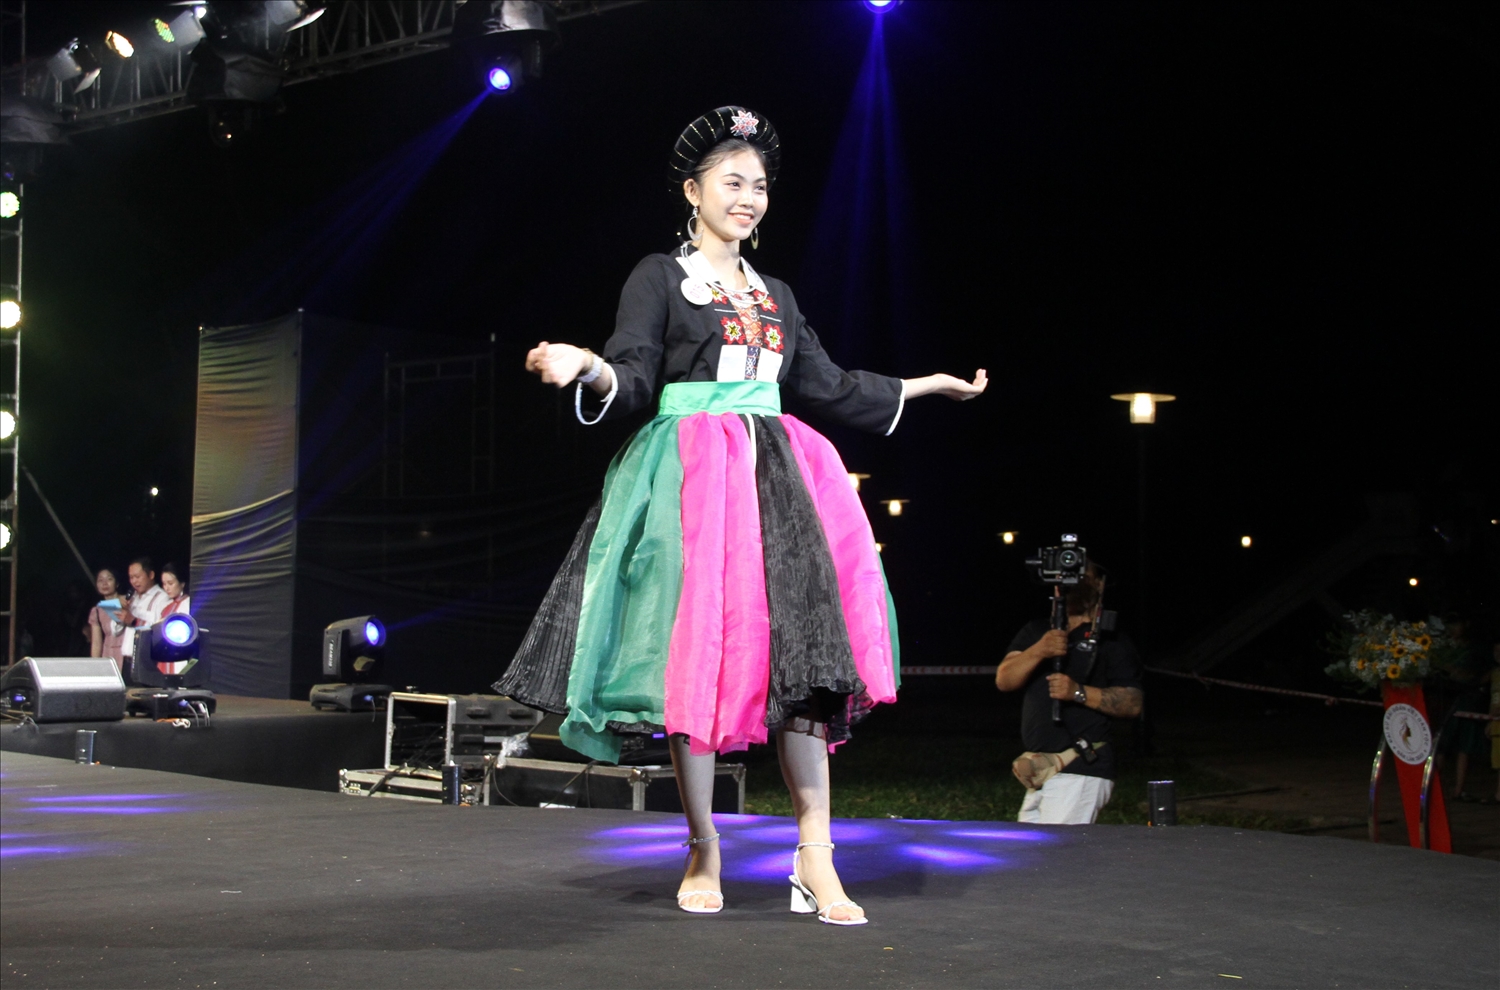  Thí sinh Lê Hoàng Phương trong phần thi trình diễn trang phục truyền thống